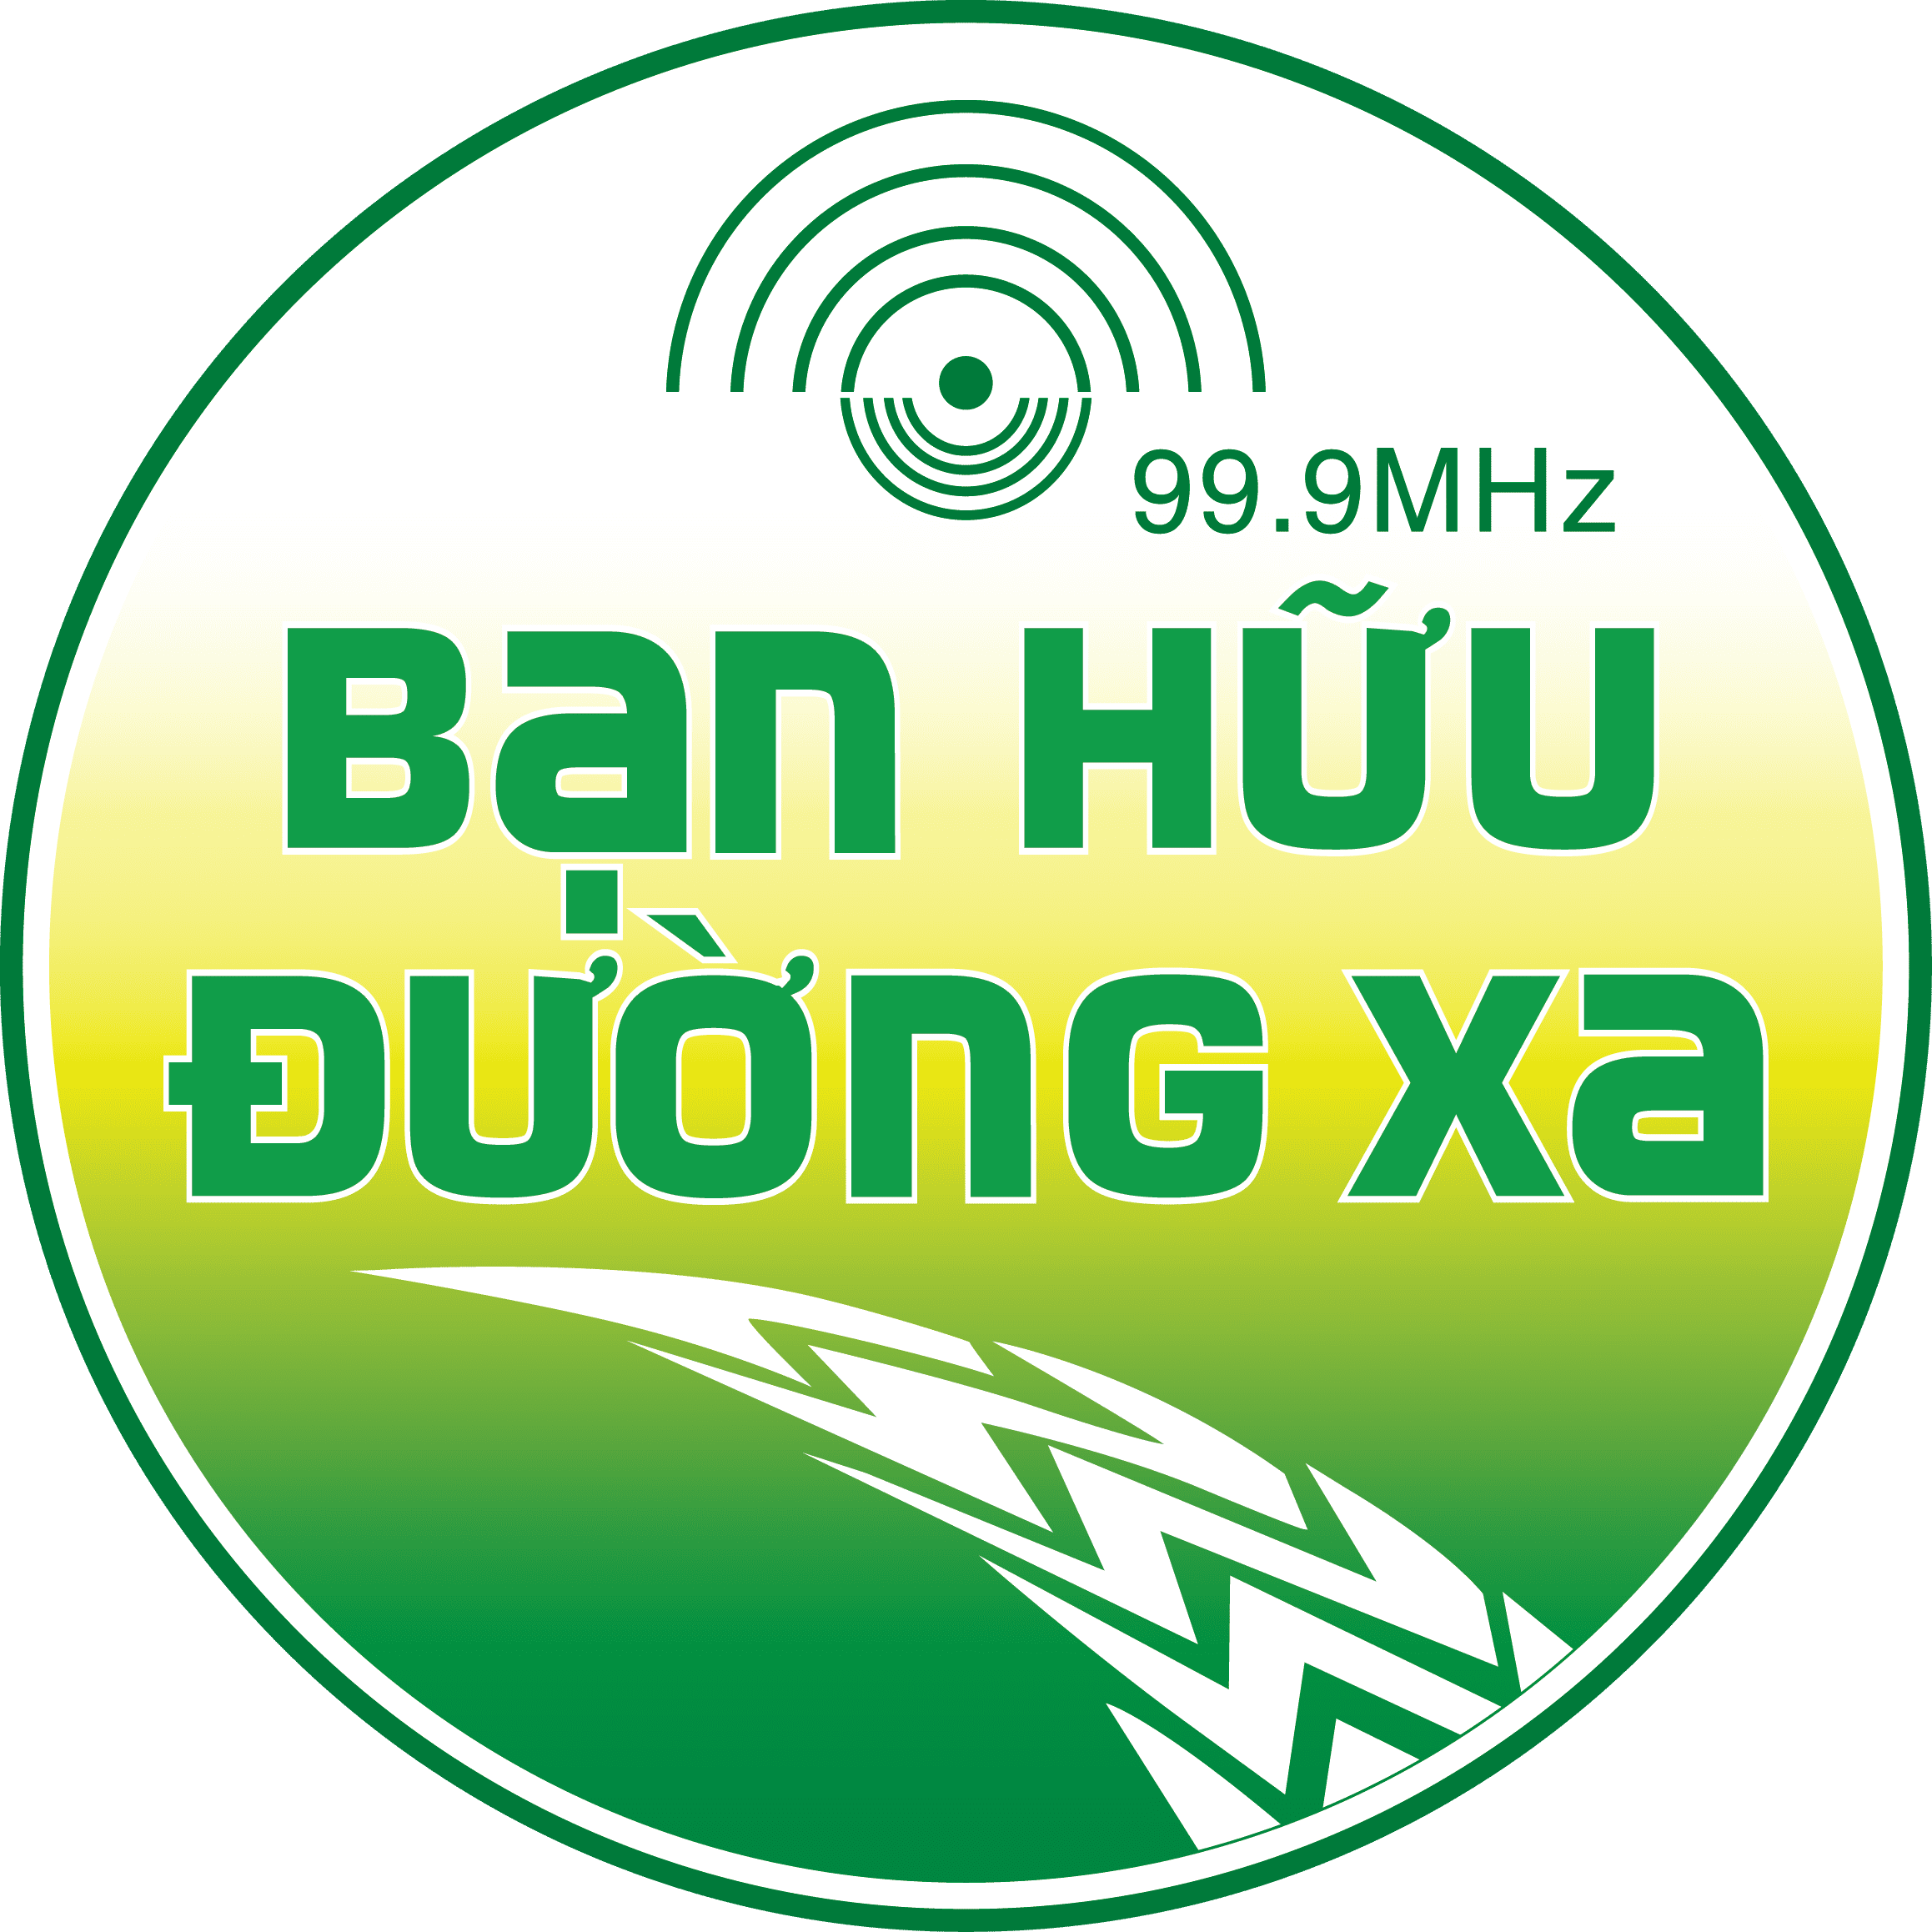 #1 Xưởng may áo thun, nón đồng phục bạn hữu đường xa bền và đẹp tại Việt Nam - logo ban huu duong